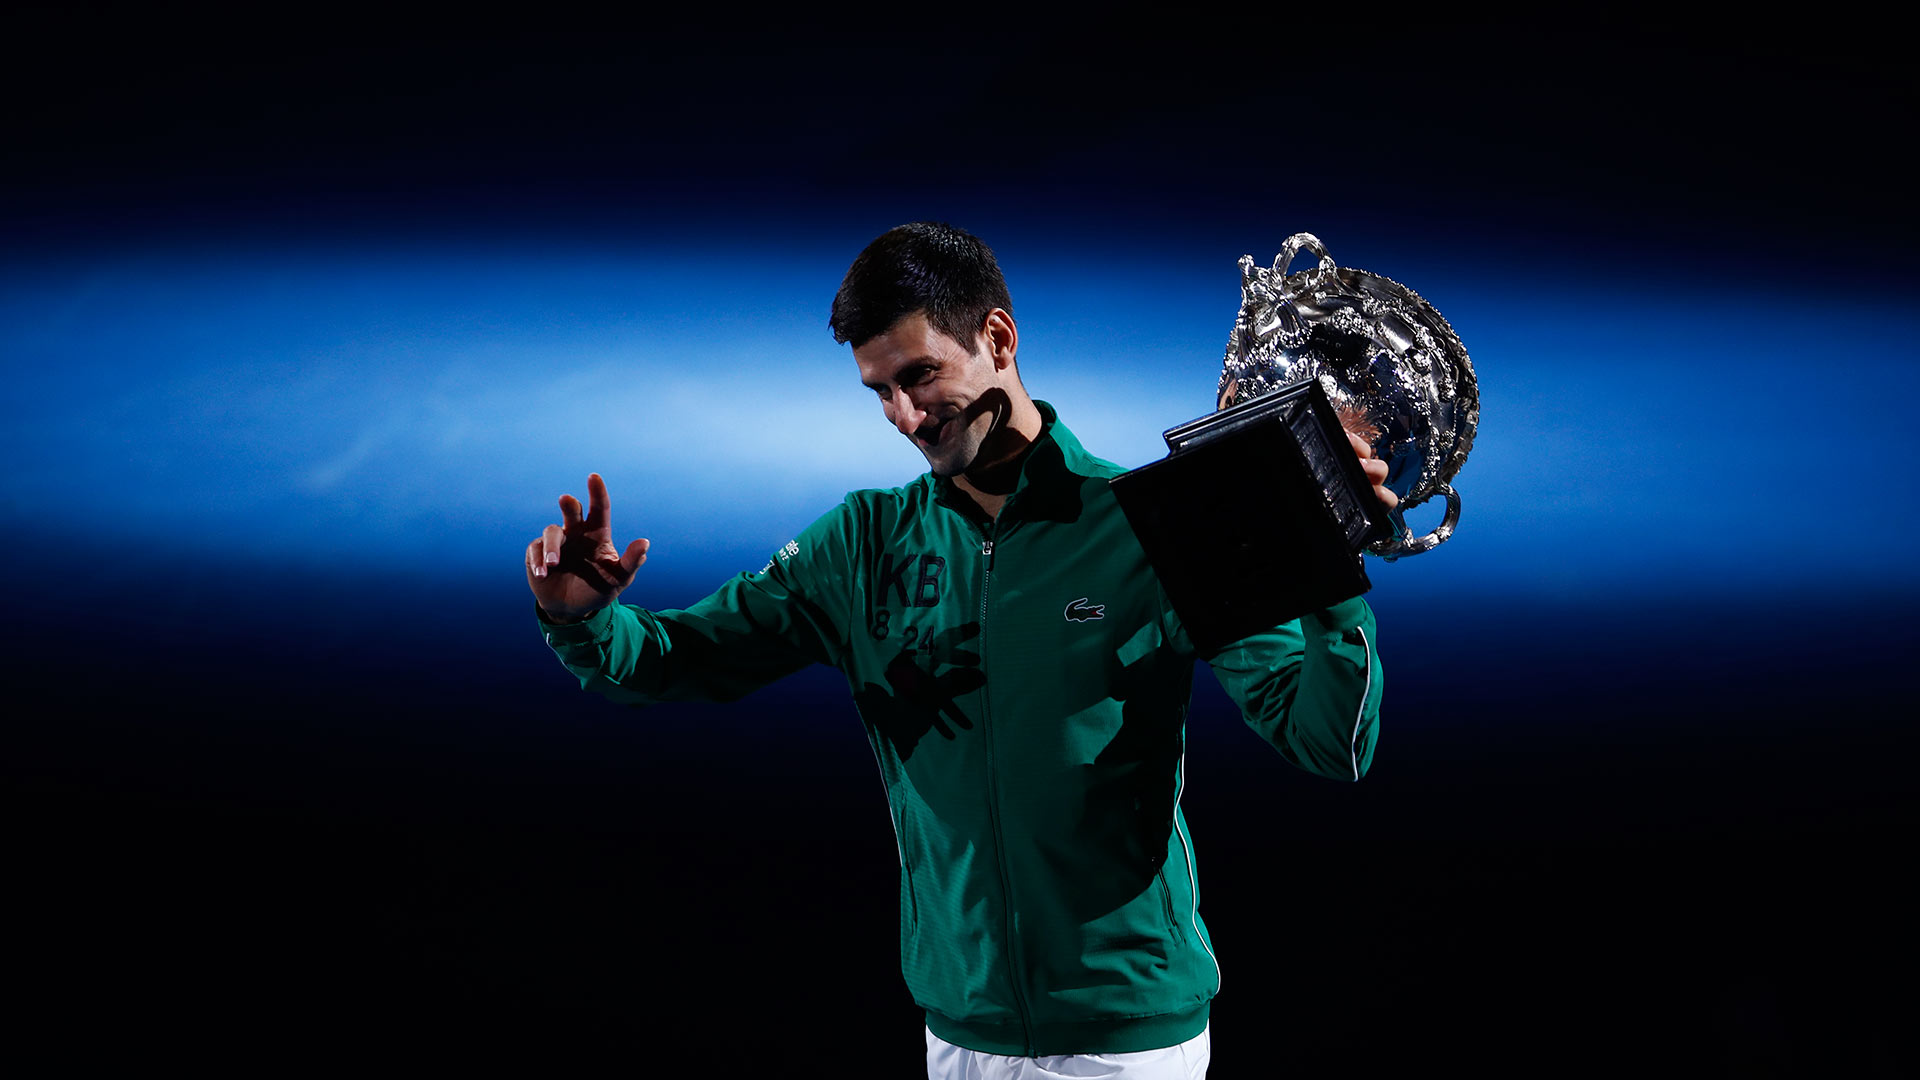 Djokovic gana el Abierto de Australia y recupera el número 1 del mundo